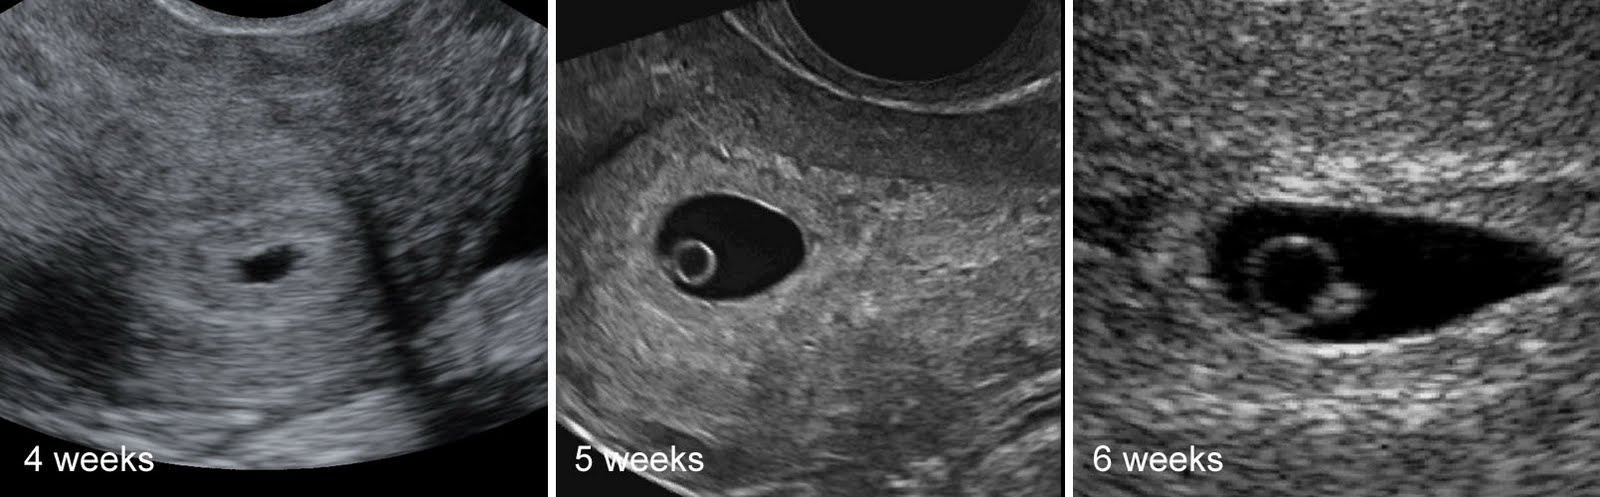 6 эмбриональная неделя. 4 Эмбриональная неделя беременности УЗИ. Эмбрион на 5 неделе беременности УЗИ. Беременность 2-3 недели фото плода УЗИ. Эмбрион на 4 неделе беременности УЗИ.